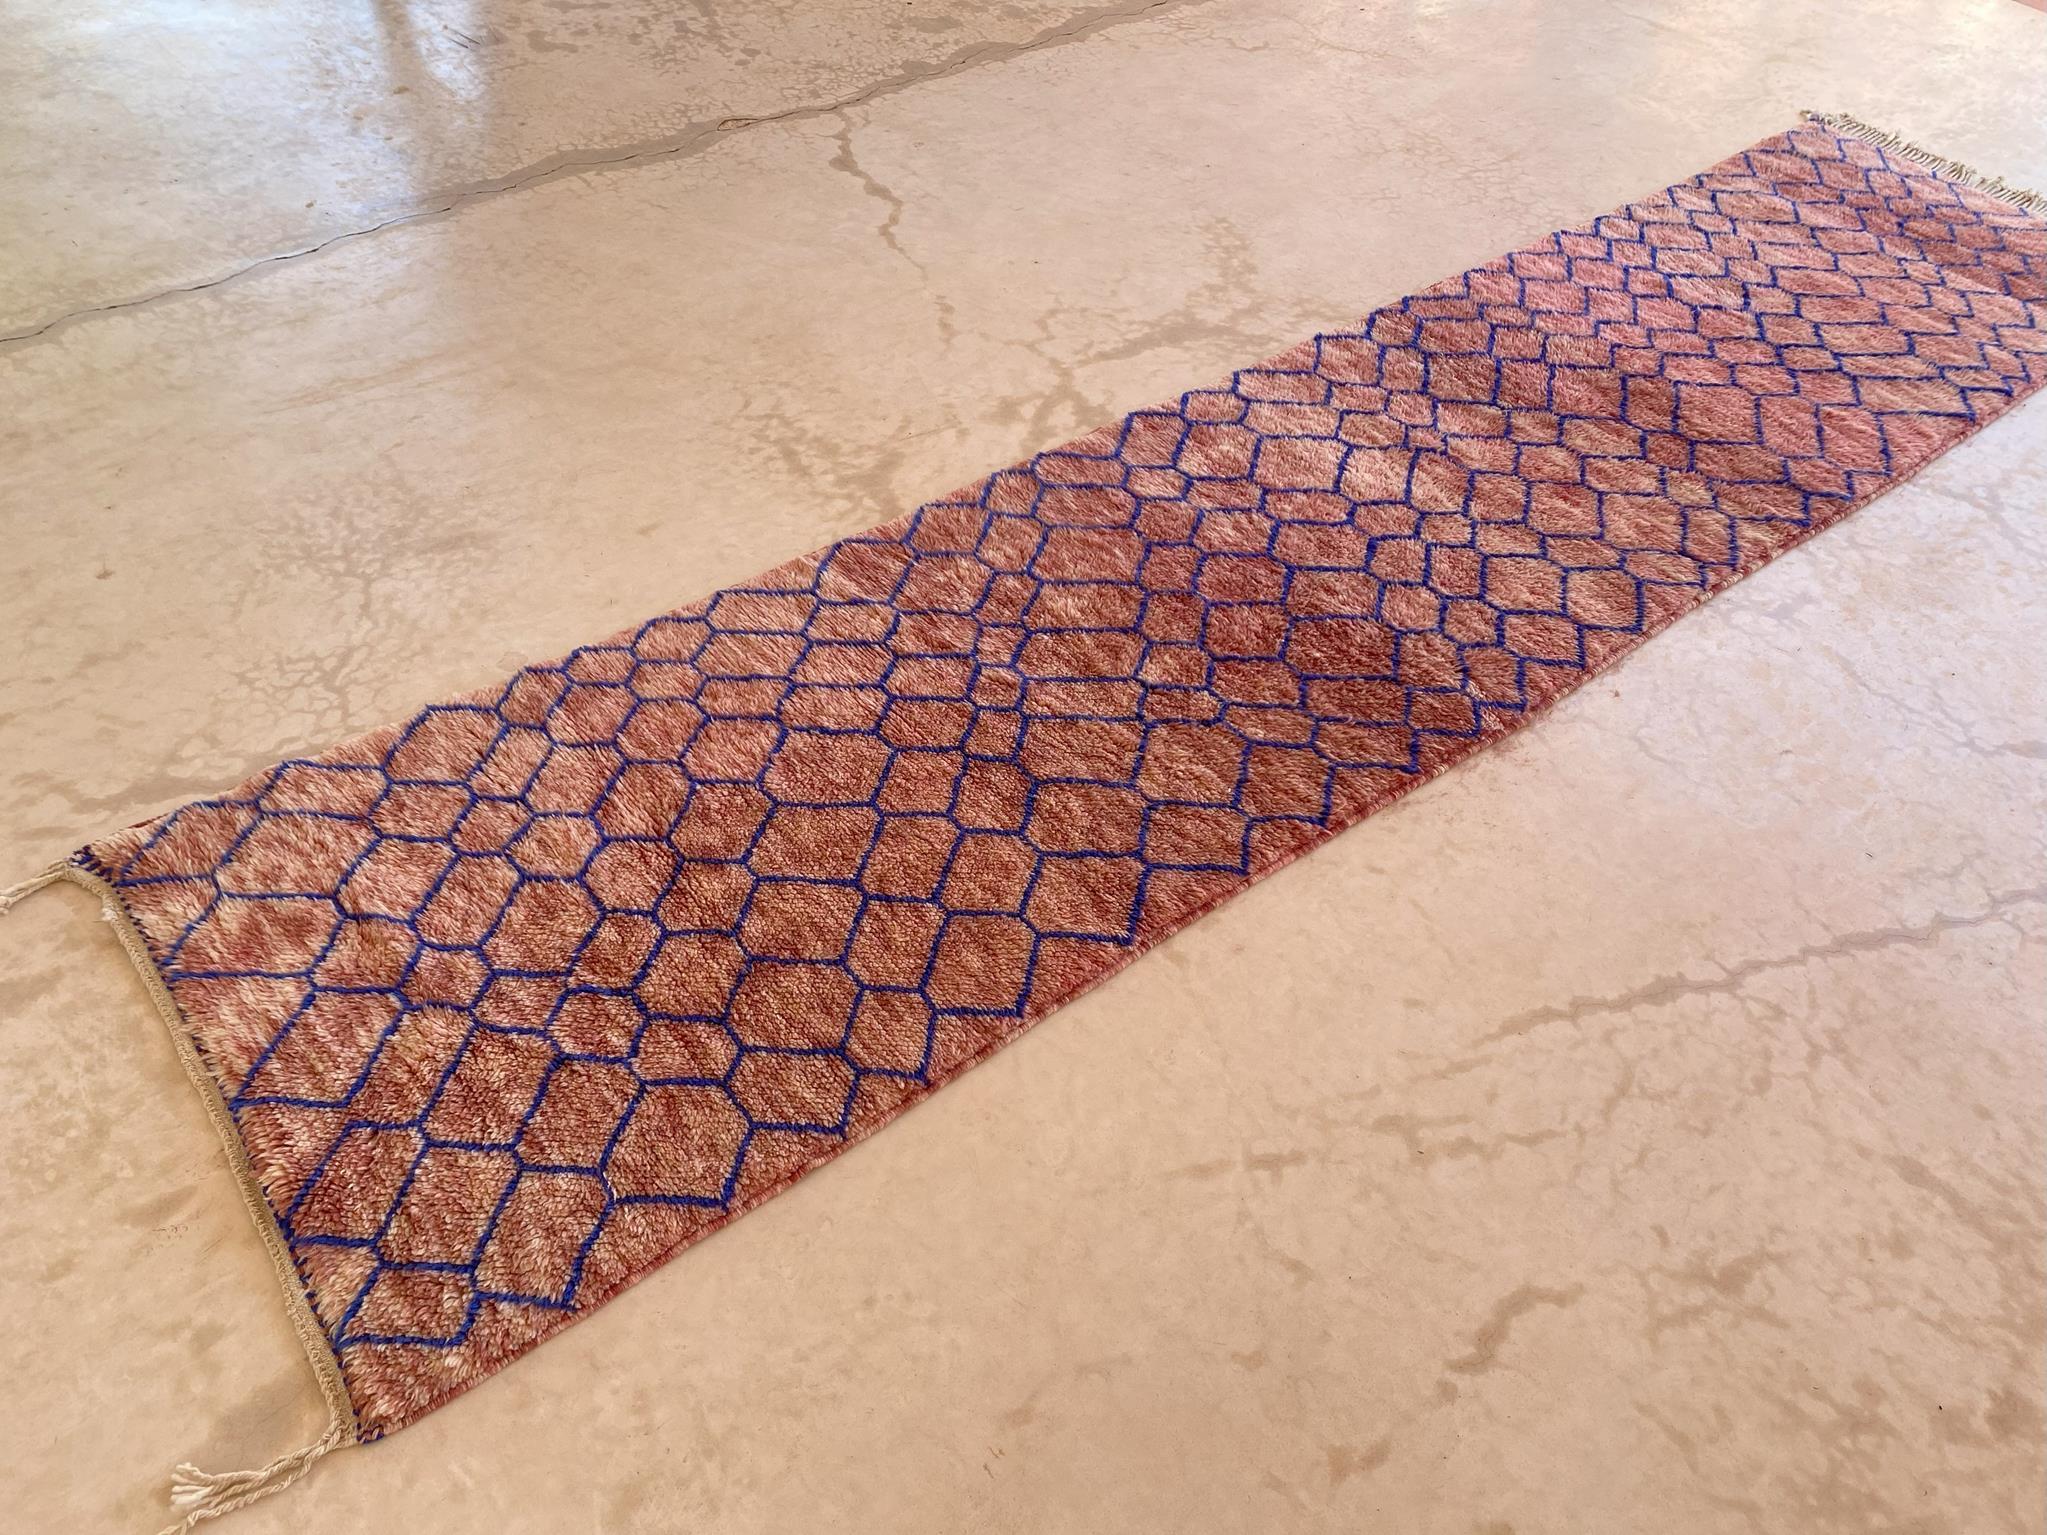 Modern Moroccan wool Mrirt runner rug - Pink/blue - 3.1x13.4feet / 95x408cm For Sale 2